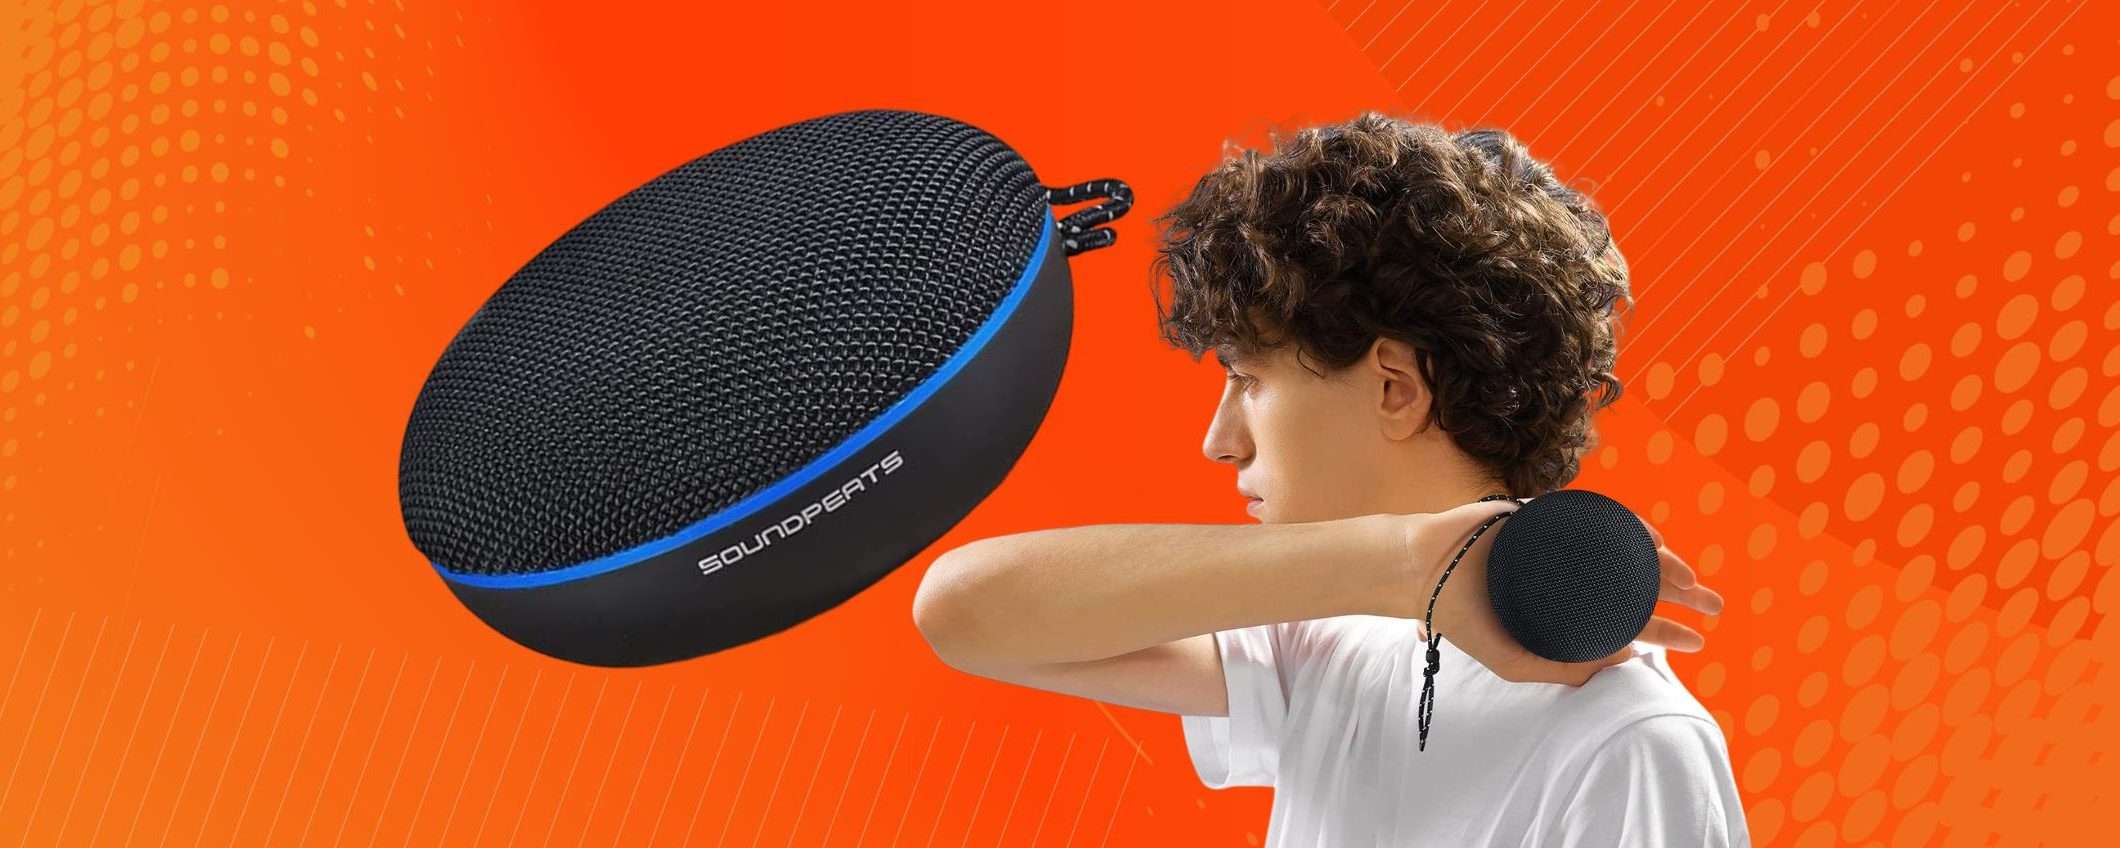 Speaker Bluetooth POTENTISSIMO ed impermeabile: con 25€ è già tuo